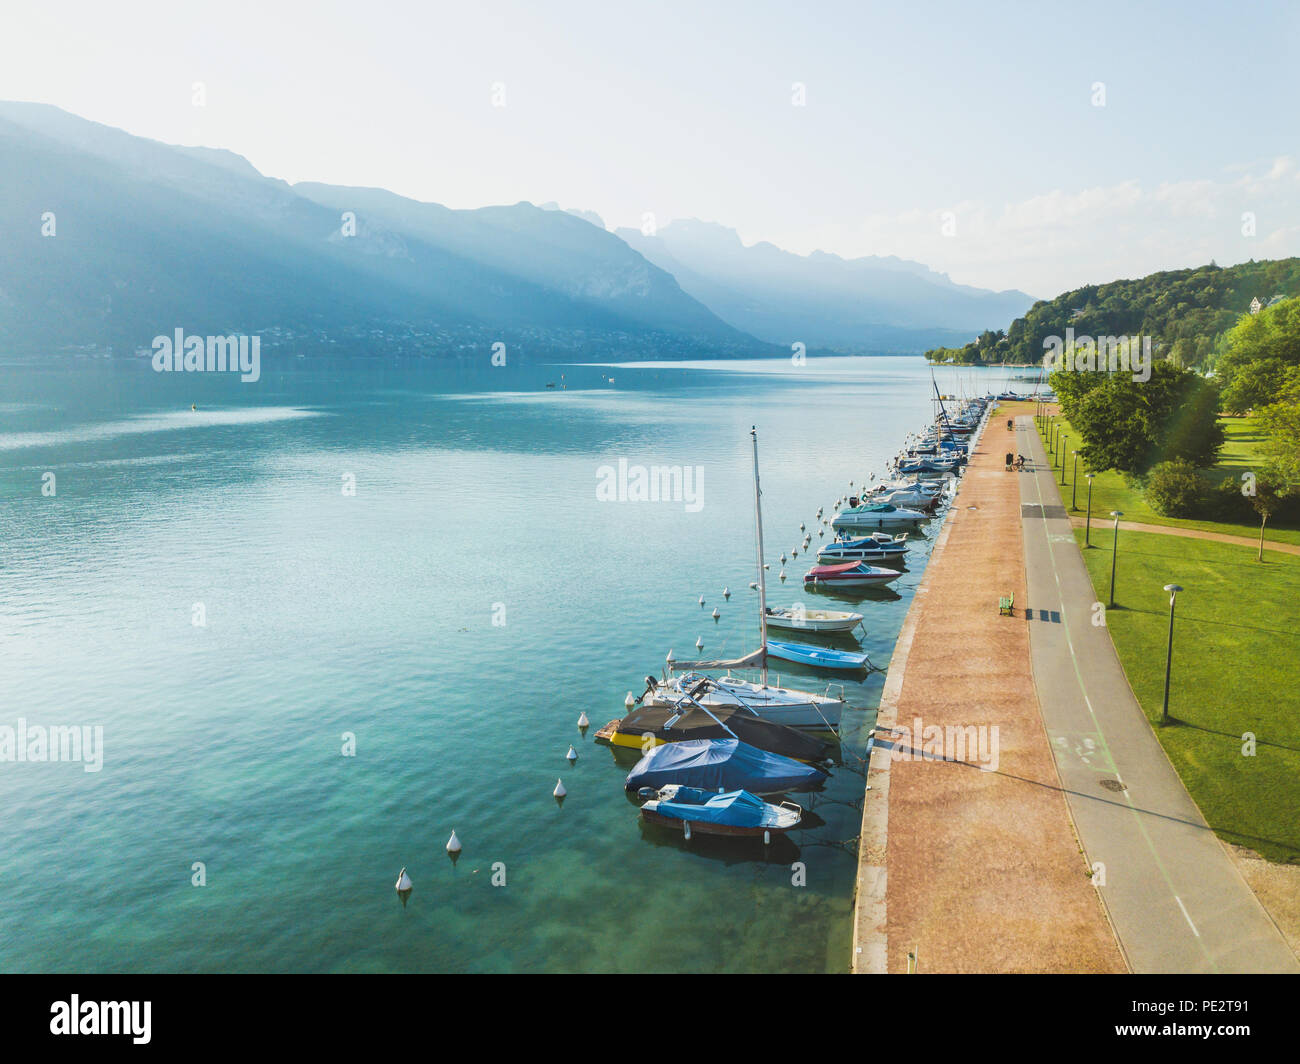 Paysage aérien du lac d'Annecy, Alpes, France, yachts et bateaux à voile à partir de ci-dessus, zone piétonne à pied près de l'eau bleu cristal Banque D'Images